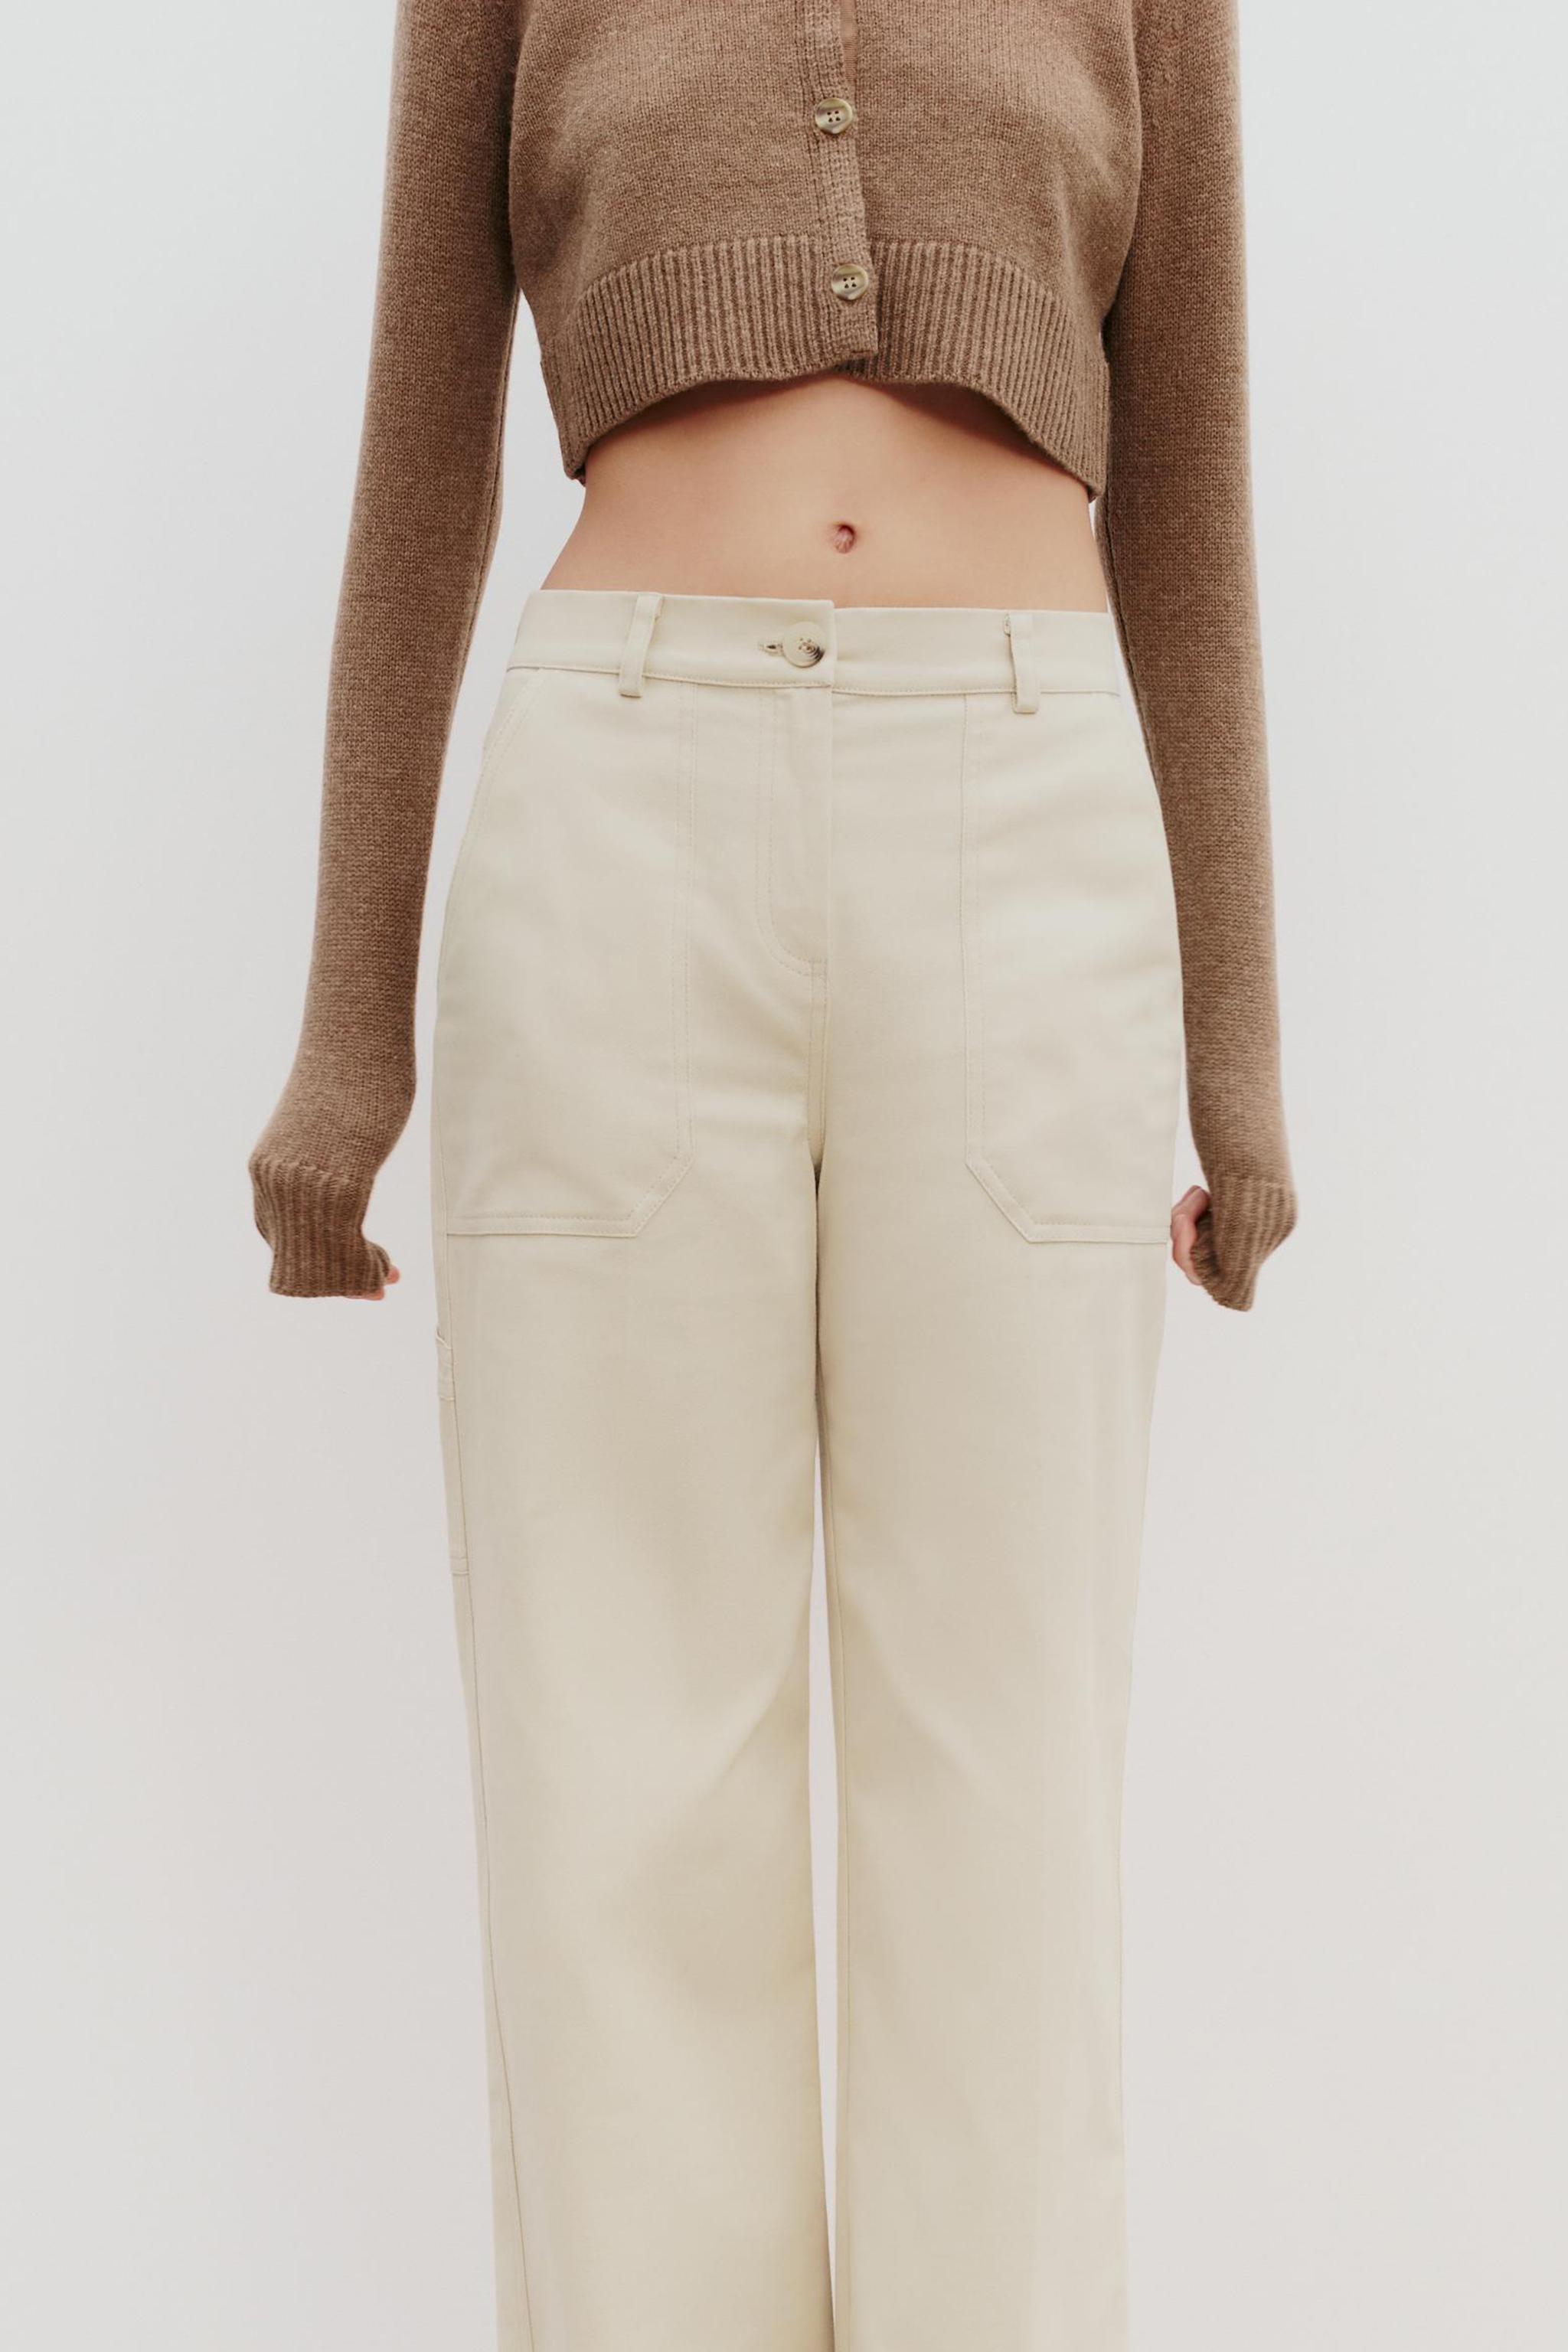 Tres pantalones de Zara (muy) anchos que además de ser comodísimos